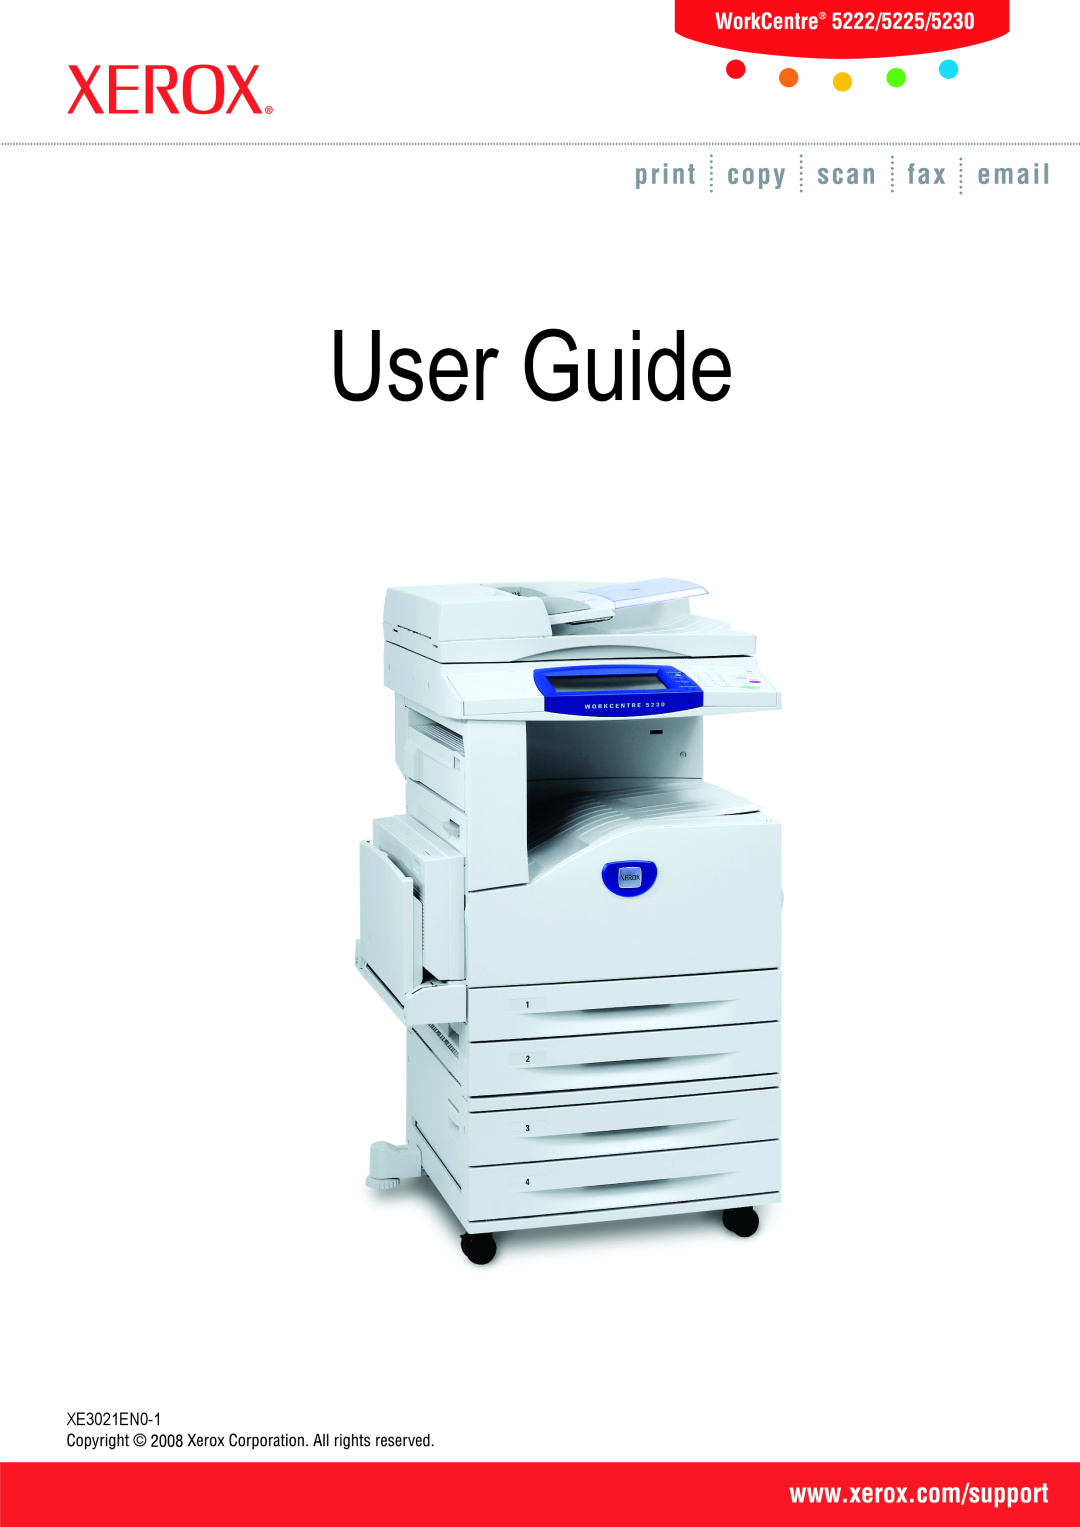 Xerox 5230 manual User Guide User Guide, XE3021EN0-1 